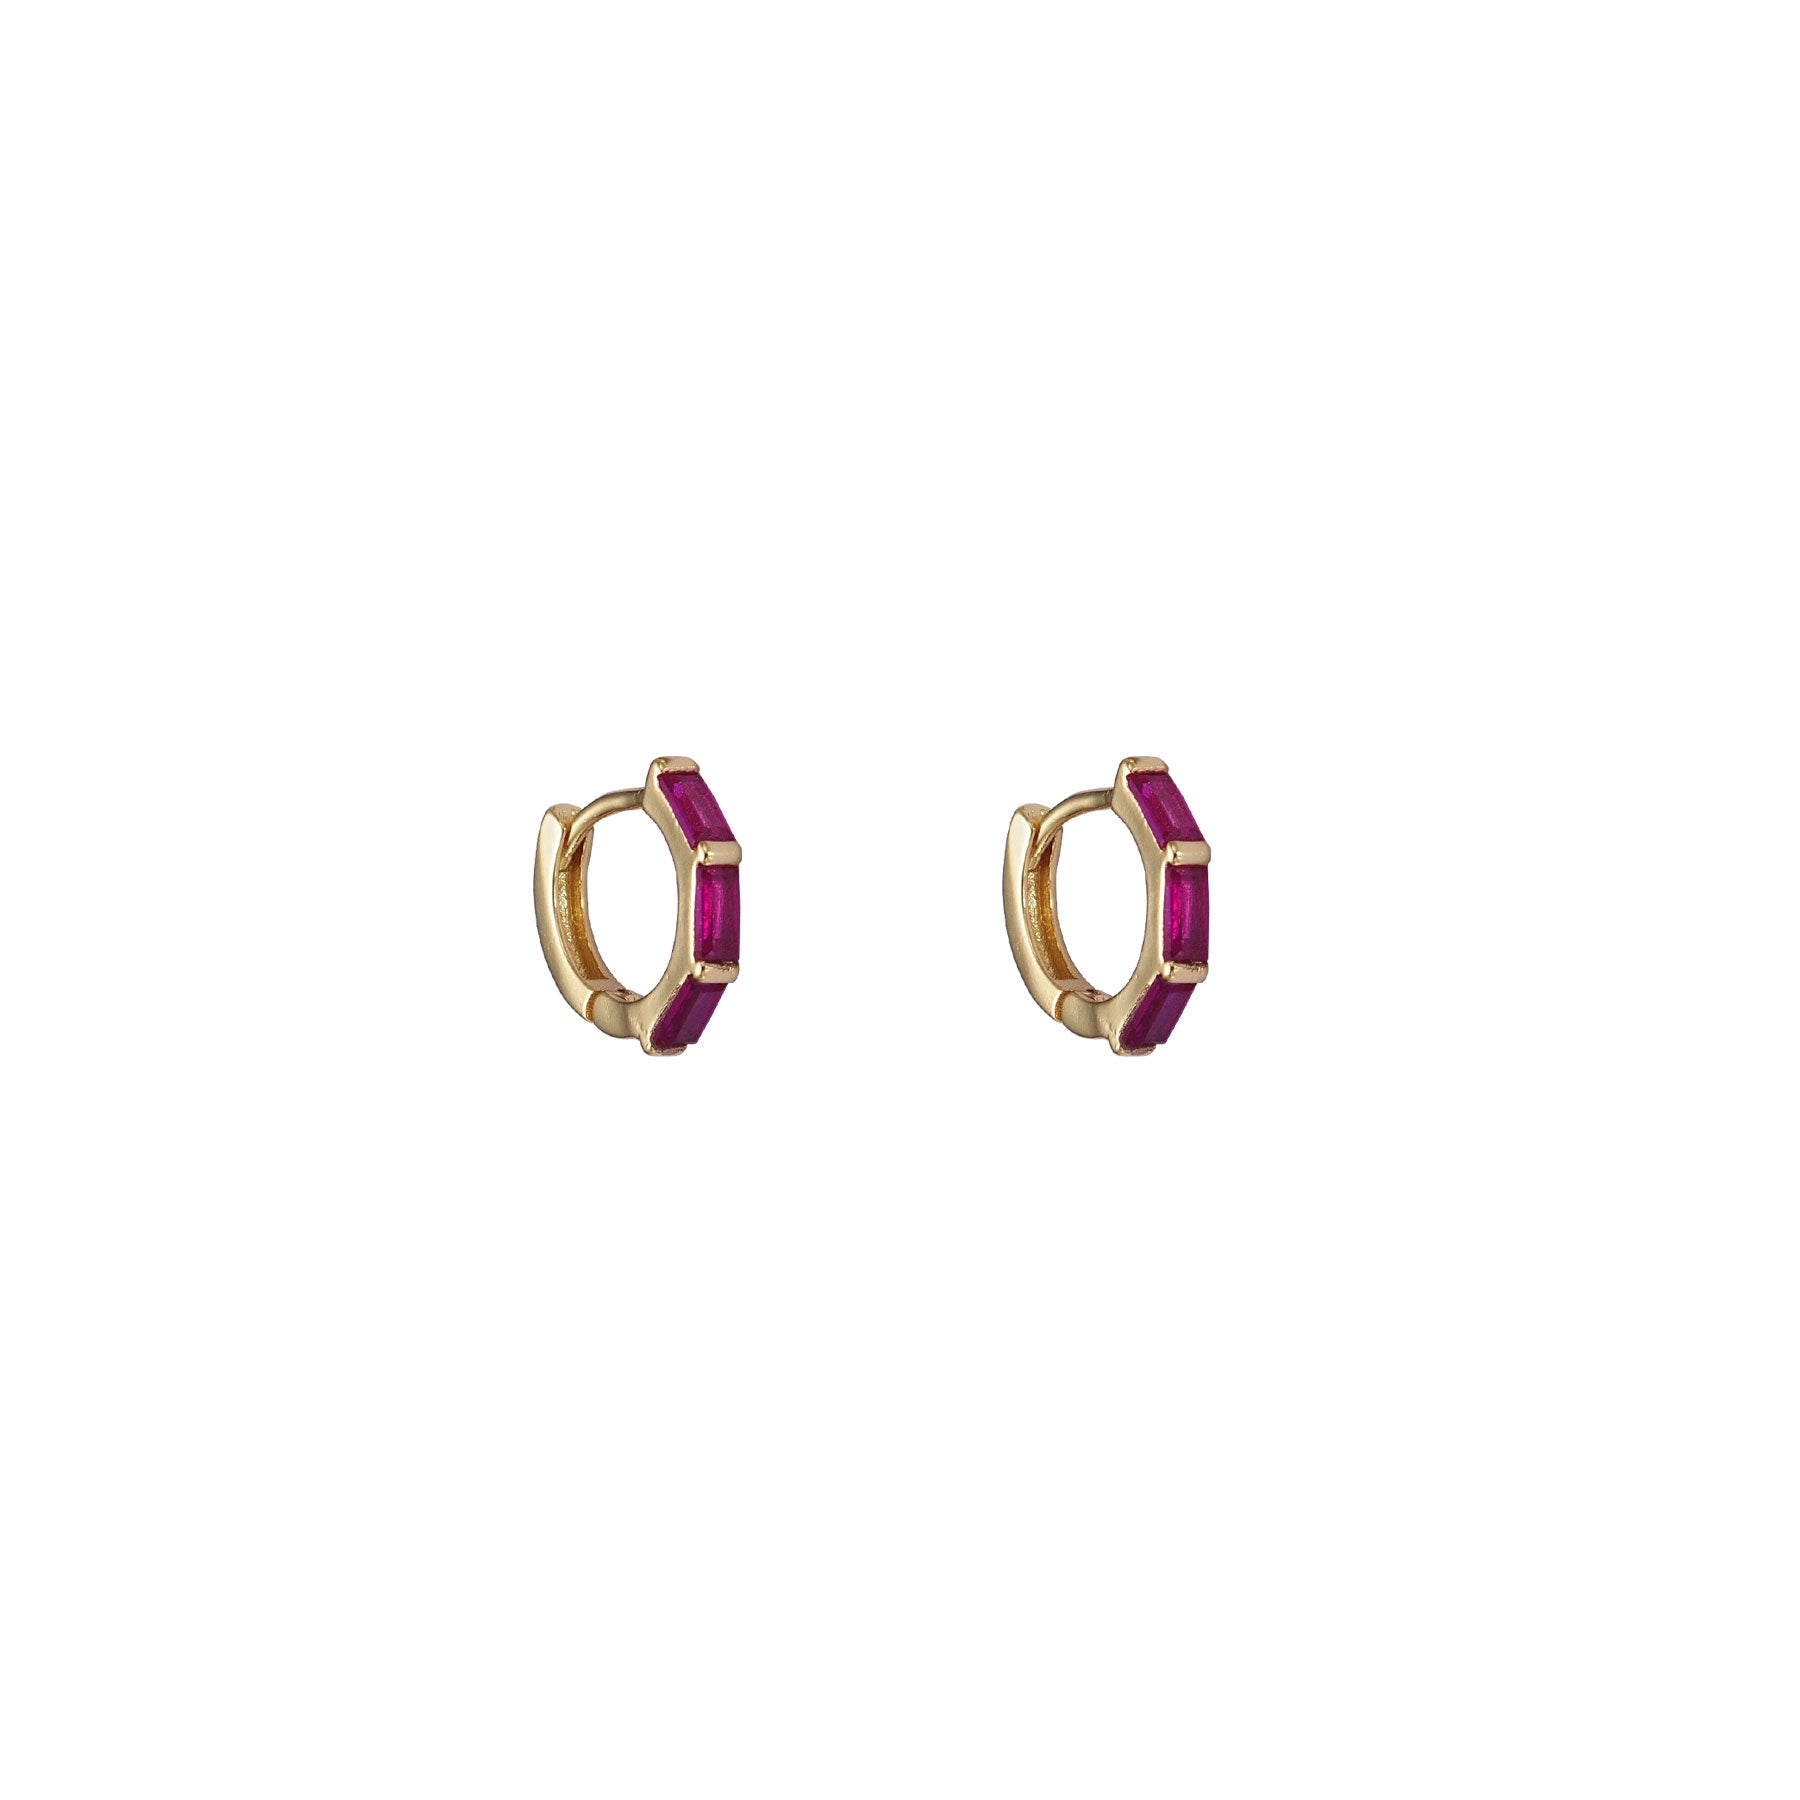 Boucles anneaux de pierres colorées or et rouge